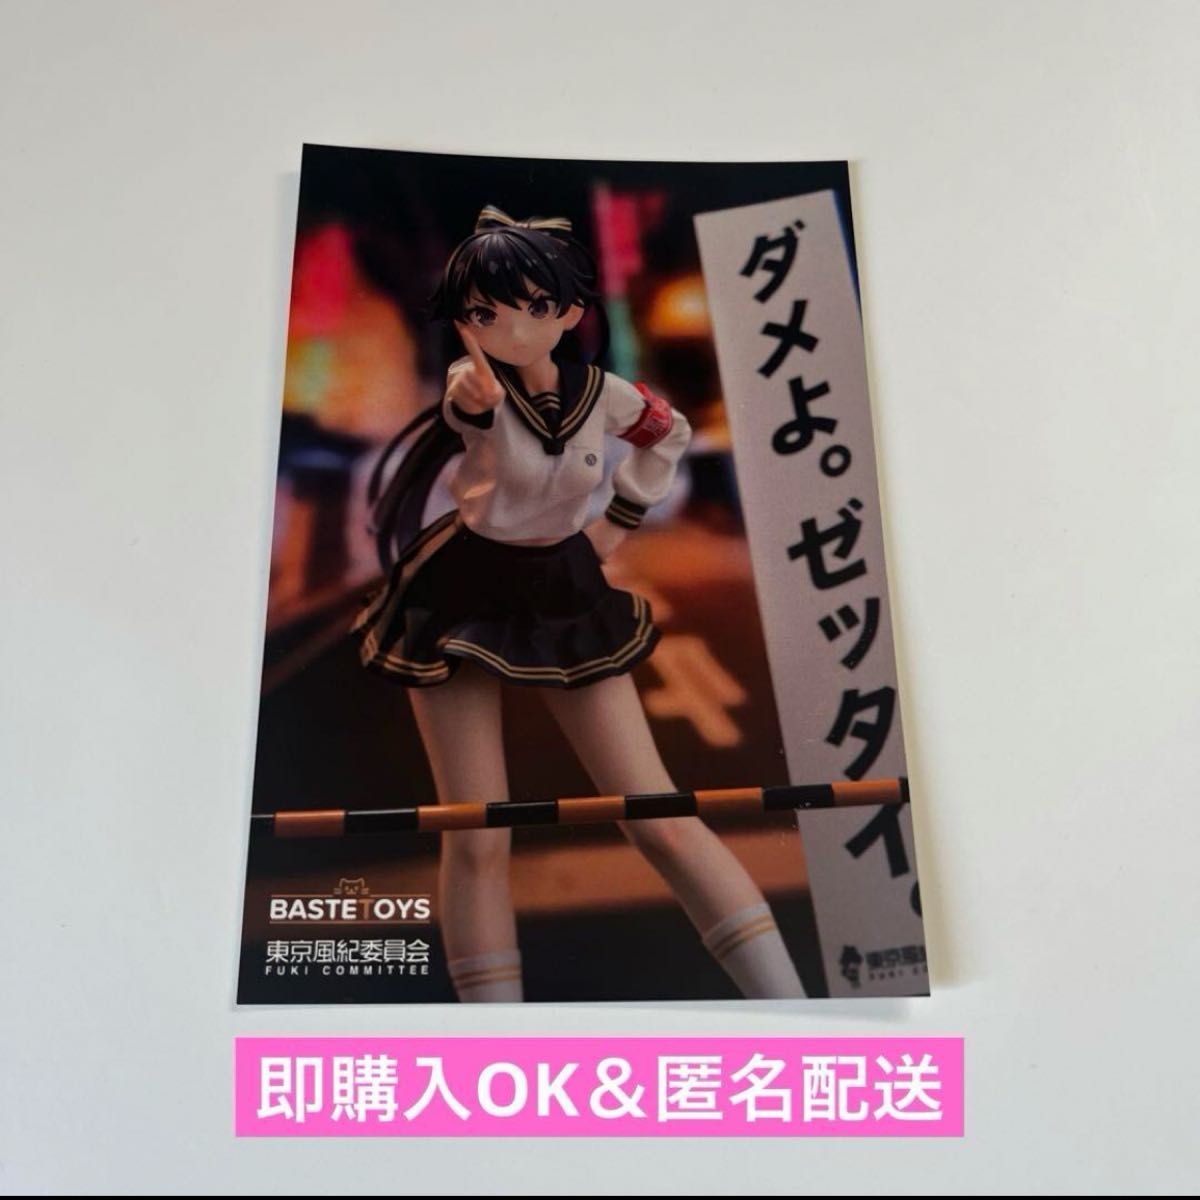 【即購入OK】東京風紀委員会 フィギュア ポストカード イベント限定配布